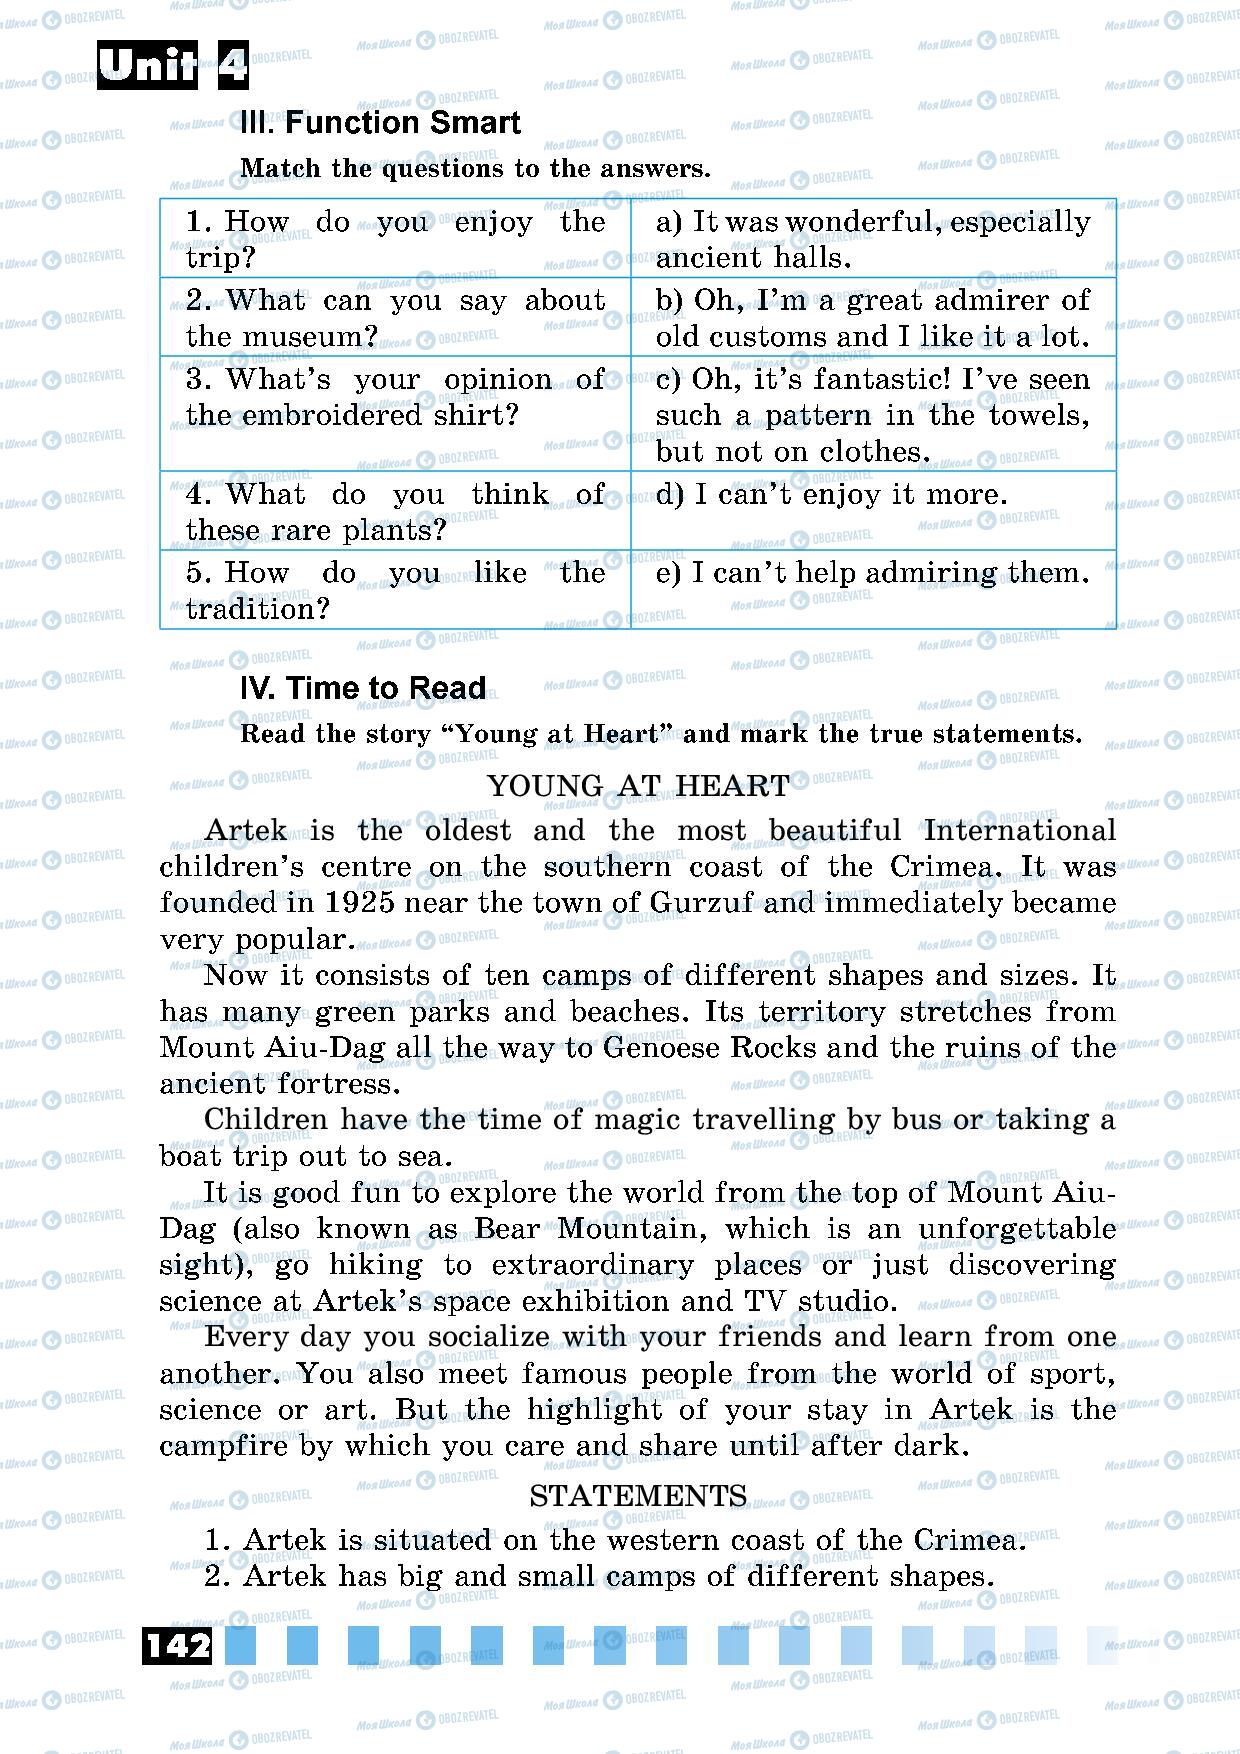 Підручники Англійська мова 5 клас сторінка 142